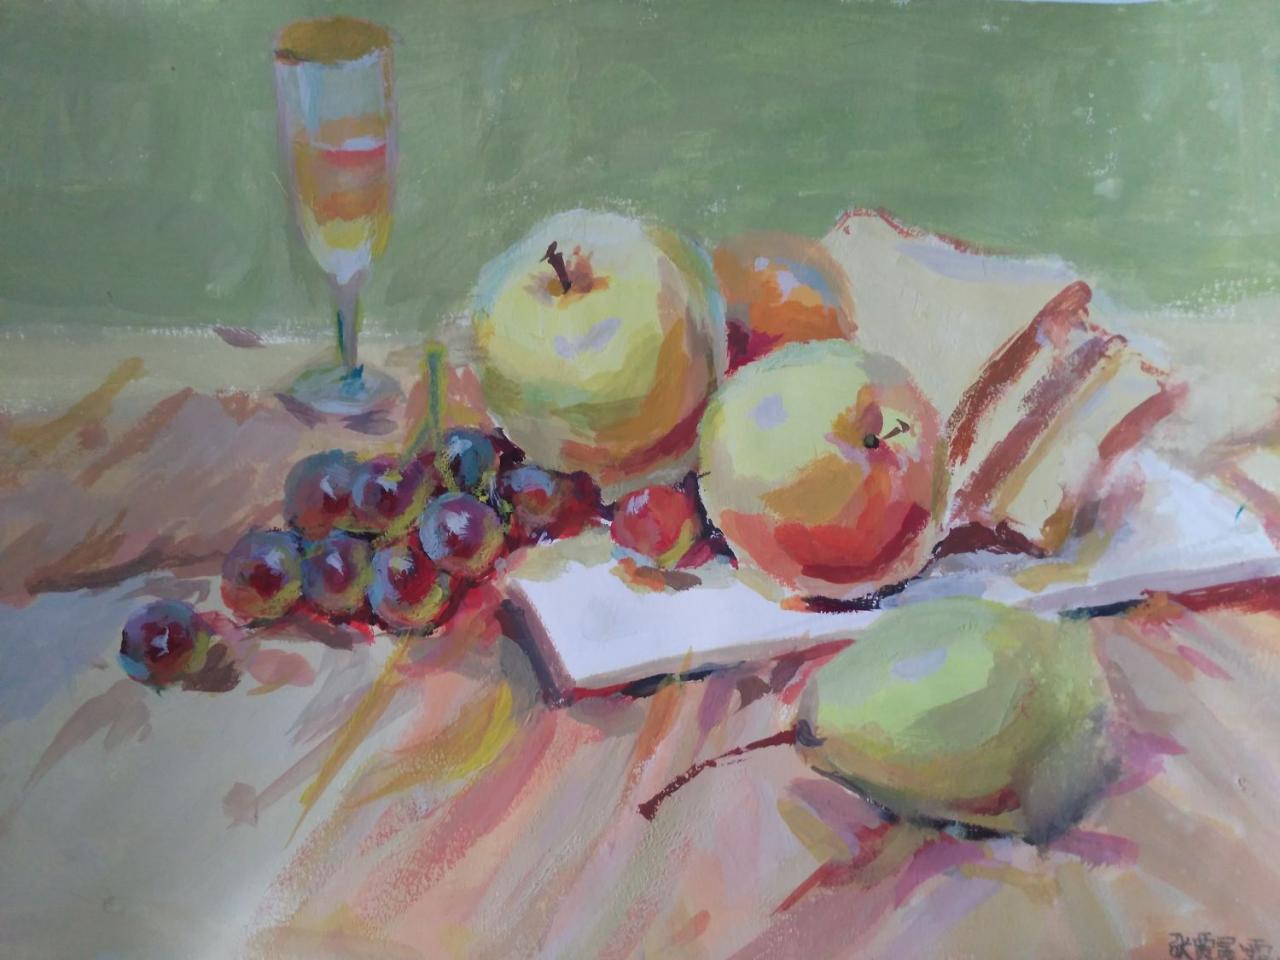 水粉静物 苹果、面包、盘子、葡萄、梨、玻璃杯 张贾晨露画